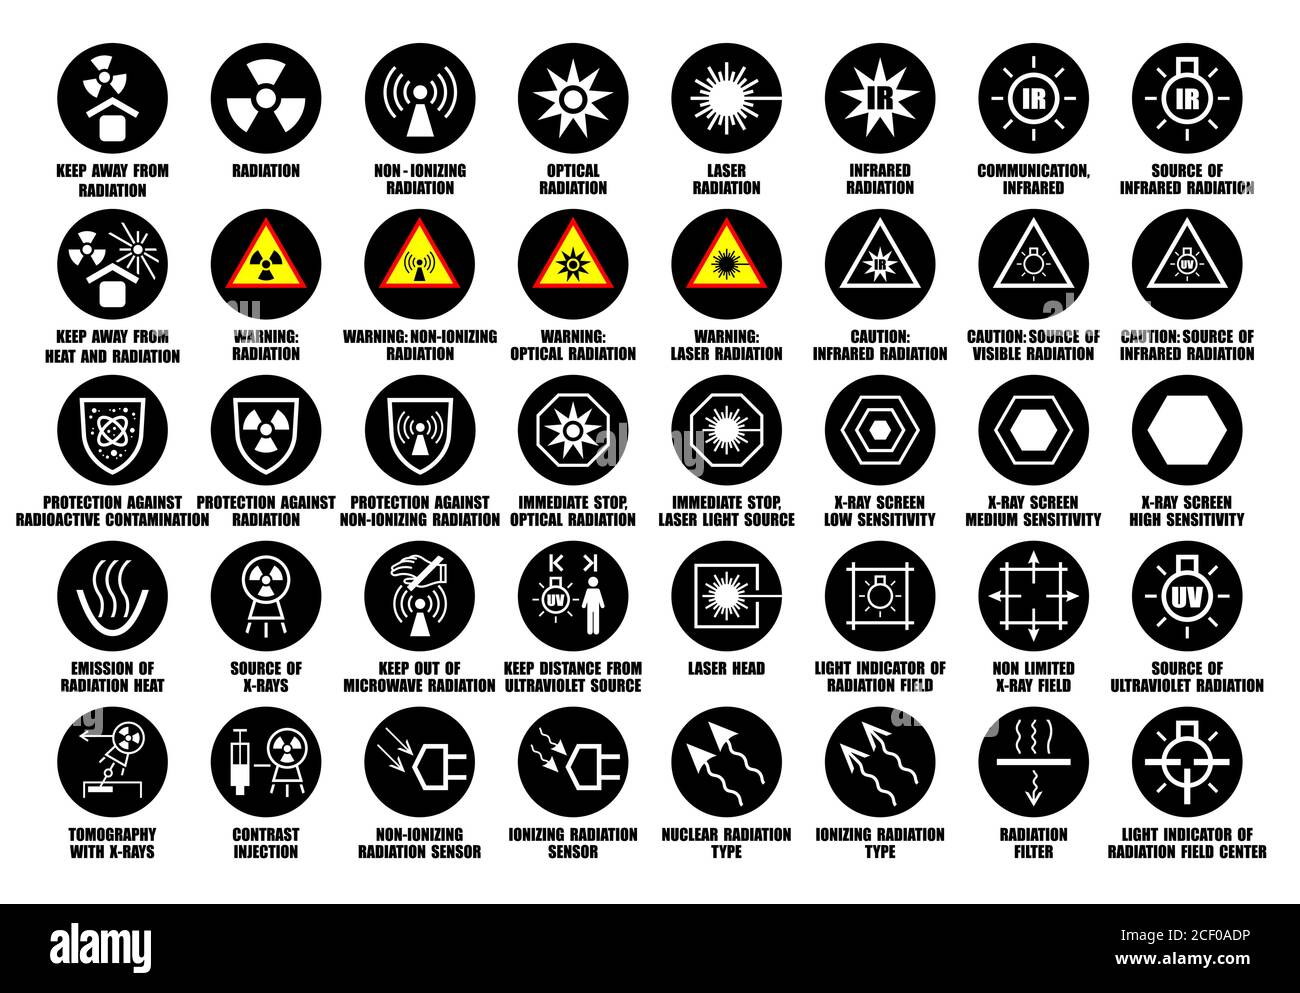 Conjunto completo de iconos de radiación láser, rayos X, infrarrojos, ultravioleta y óptica con descripción ISO estándar internacional Ilustración del Vector